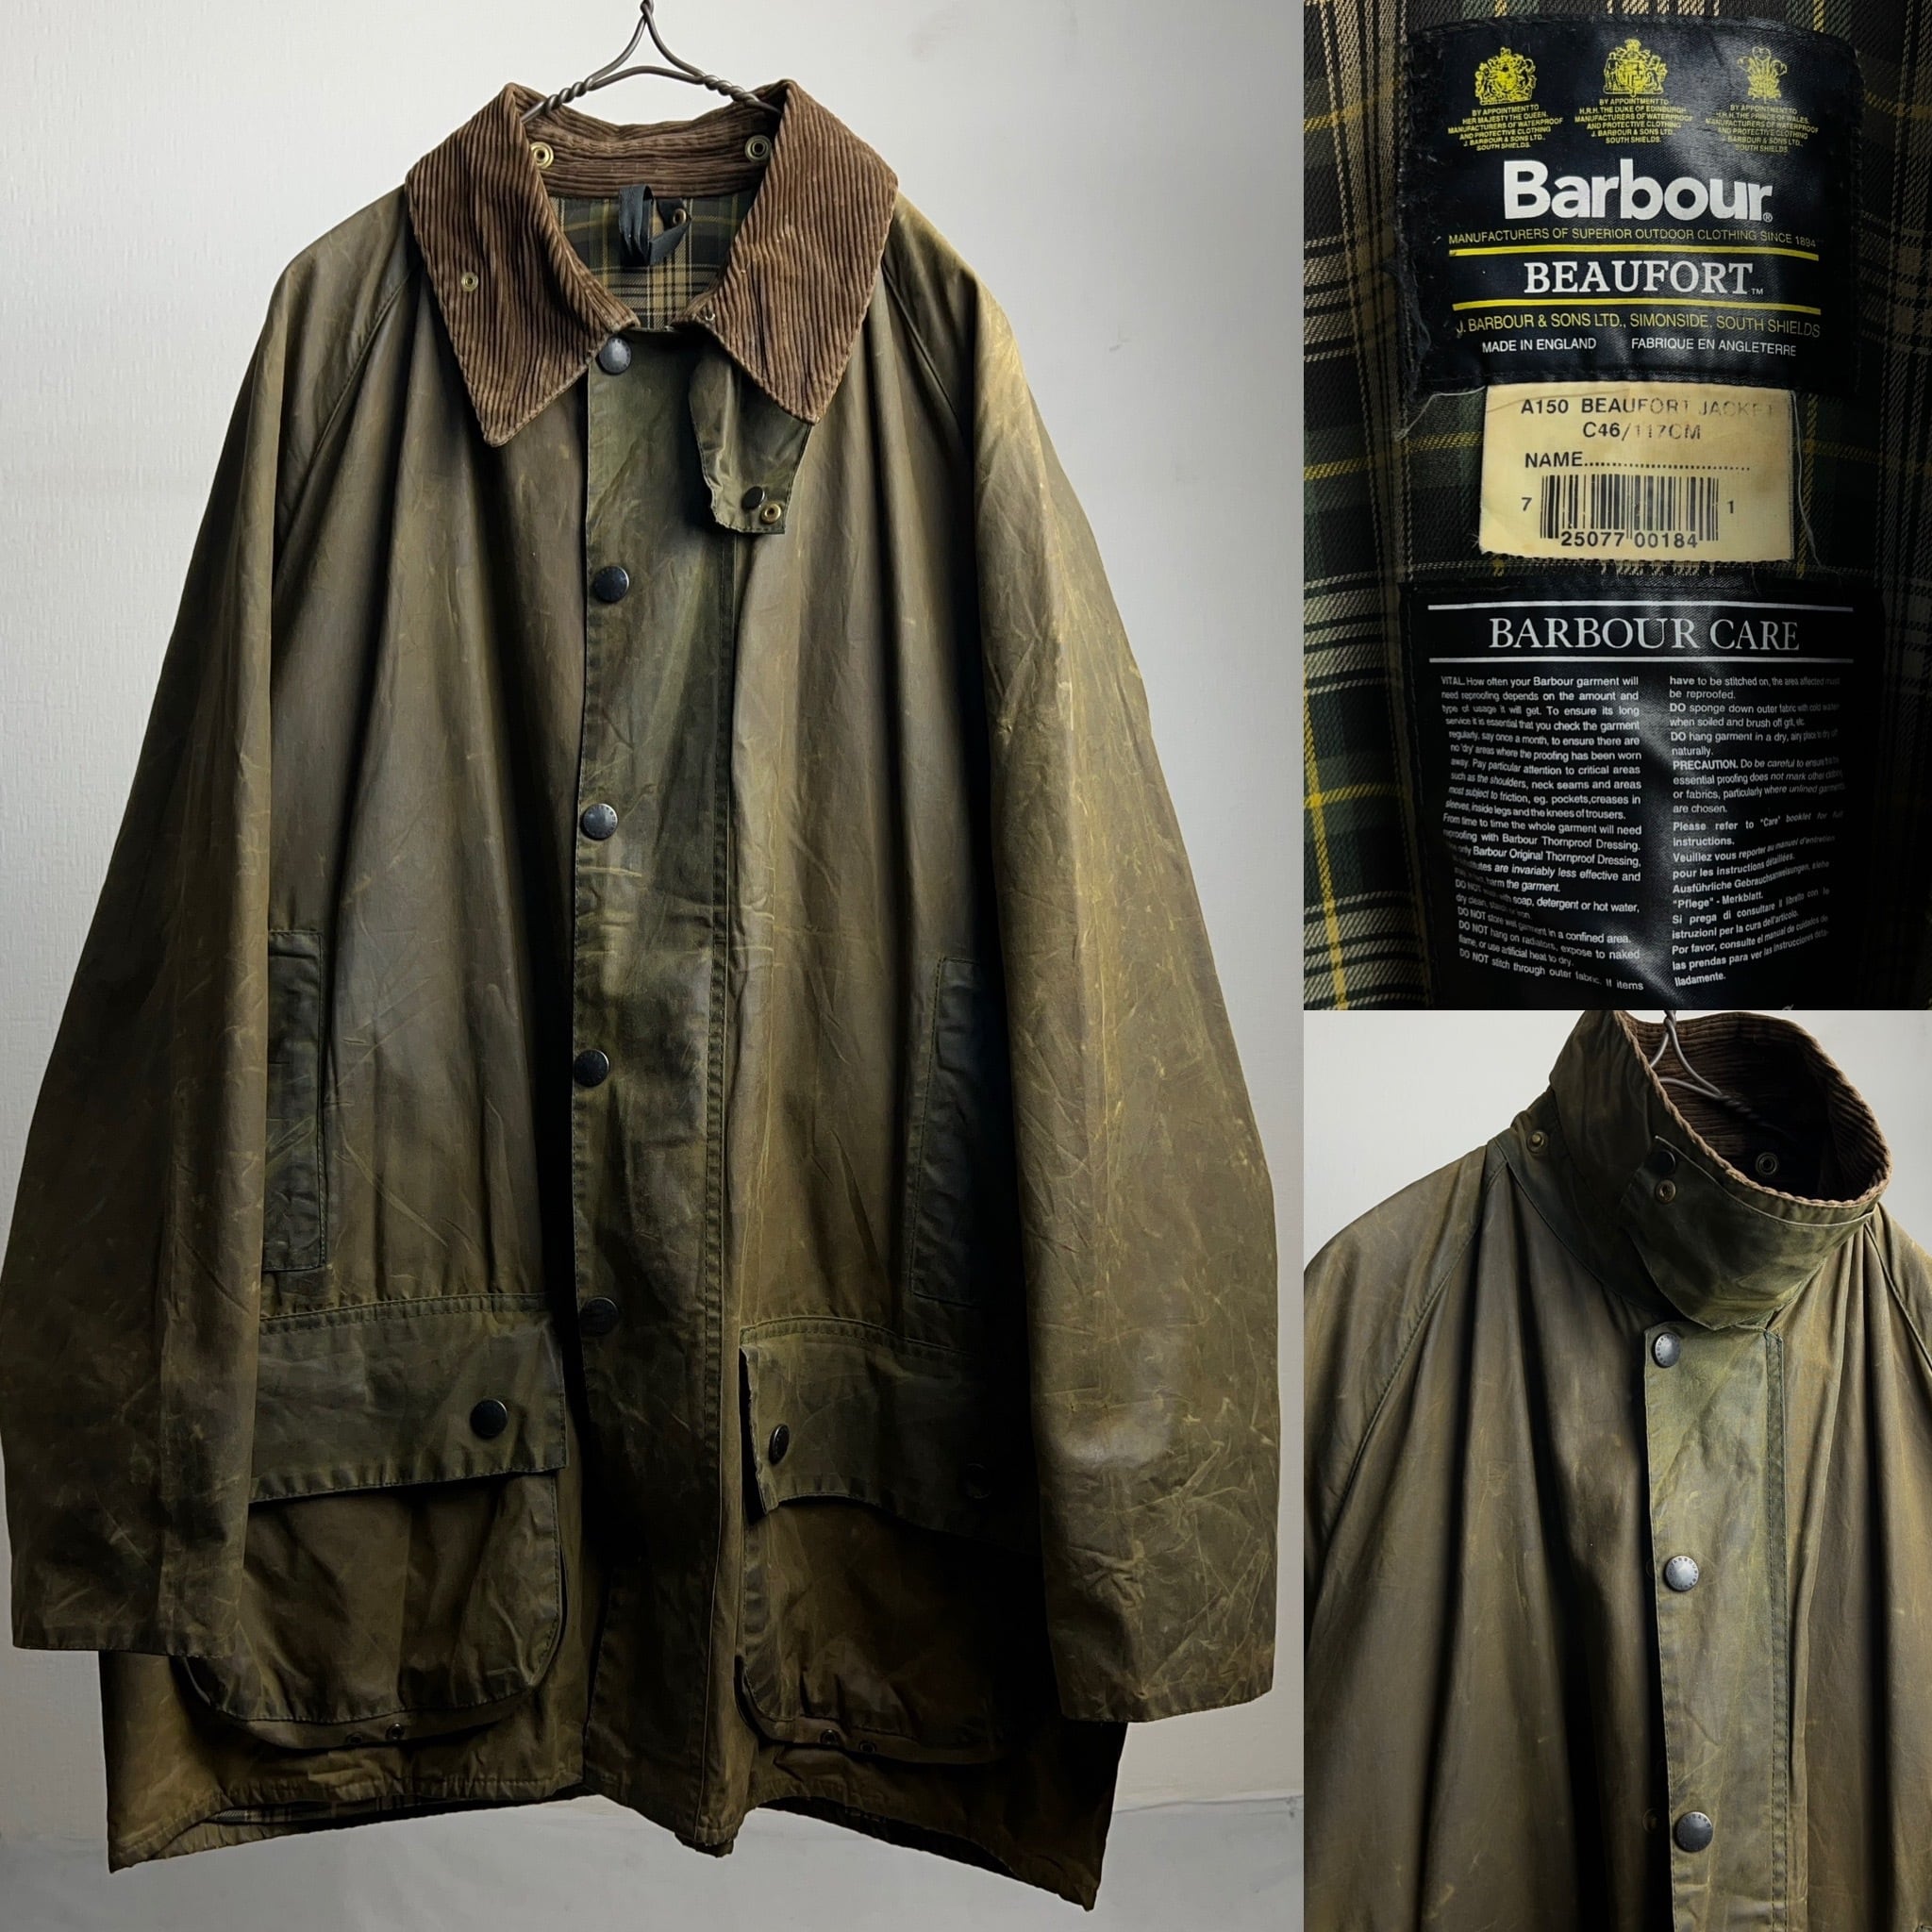 Barbour 90s オイルドジャケットファッション